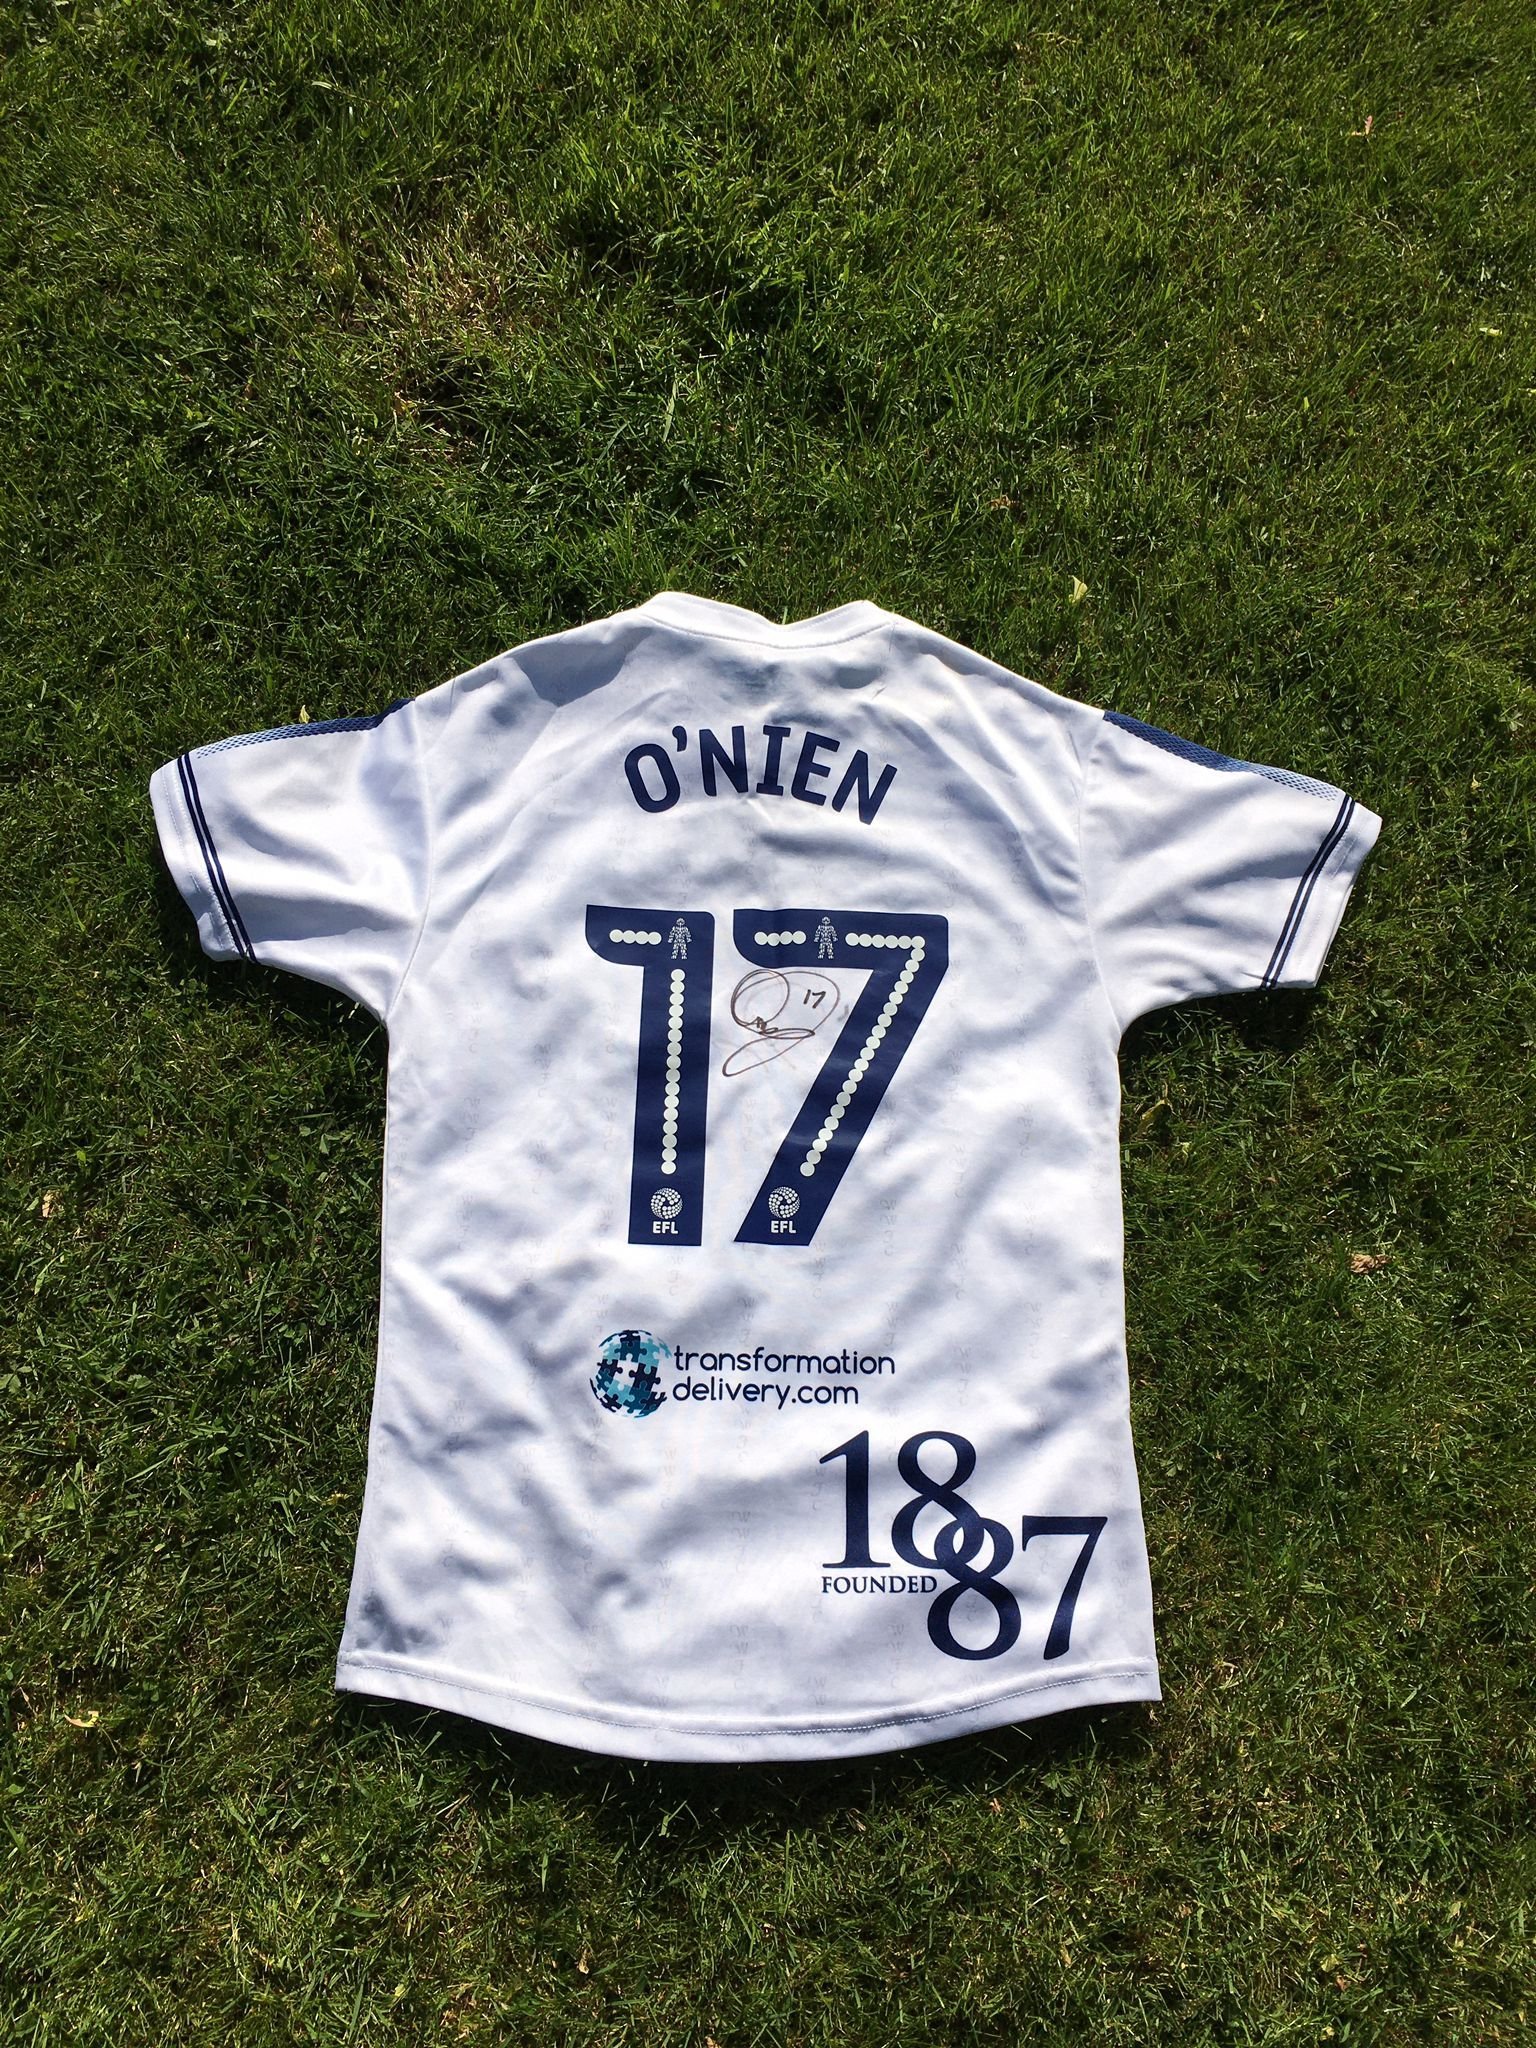 The away shirt signed Luke ONien for the 2016/17 season